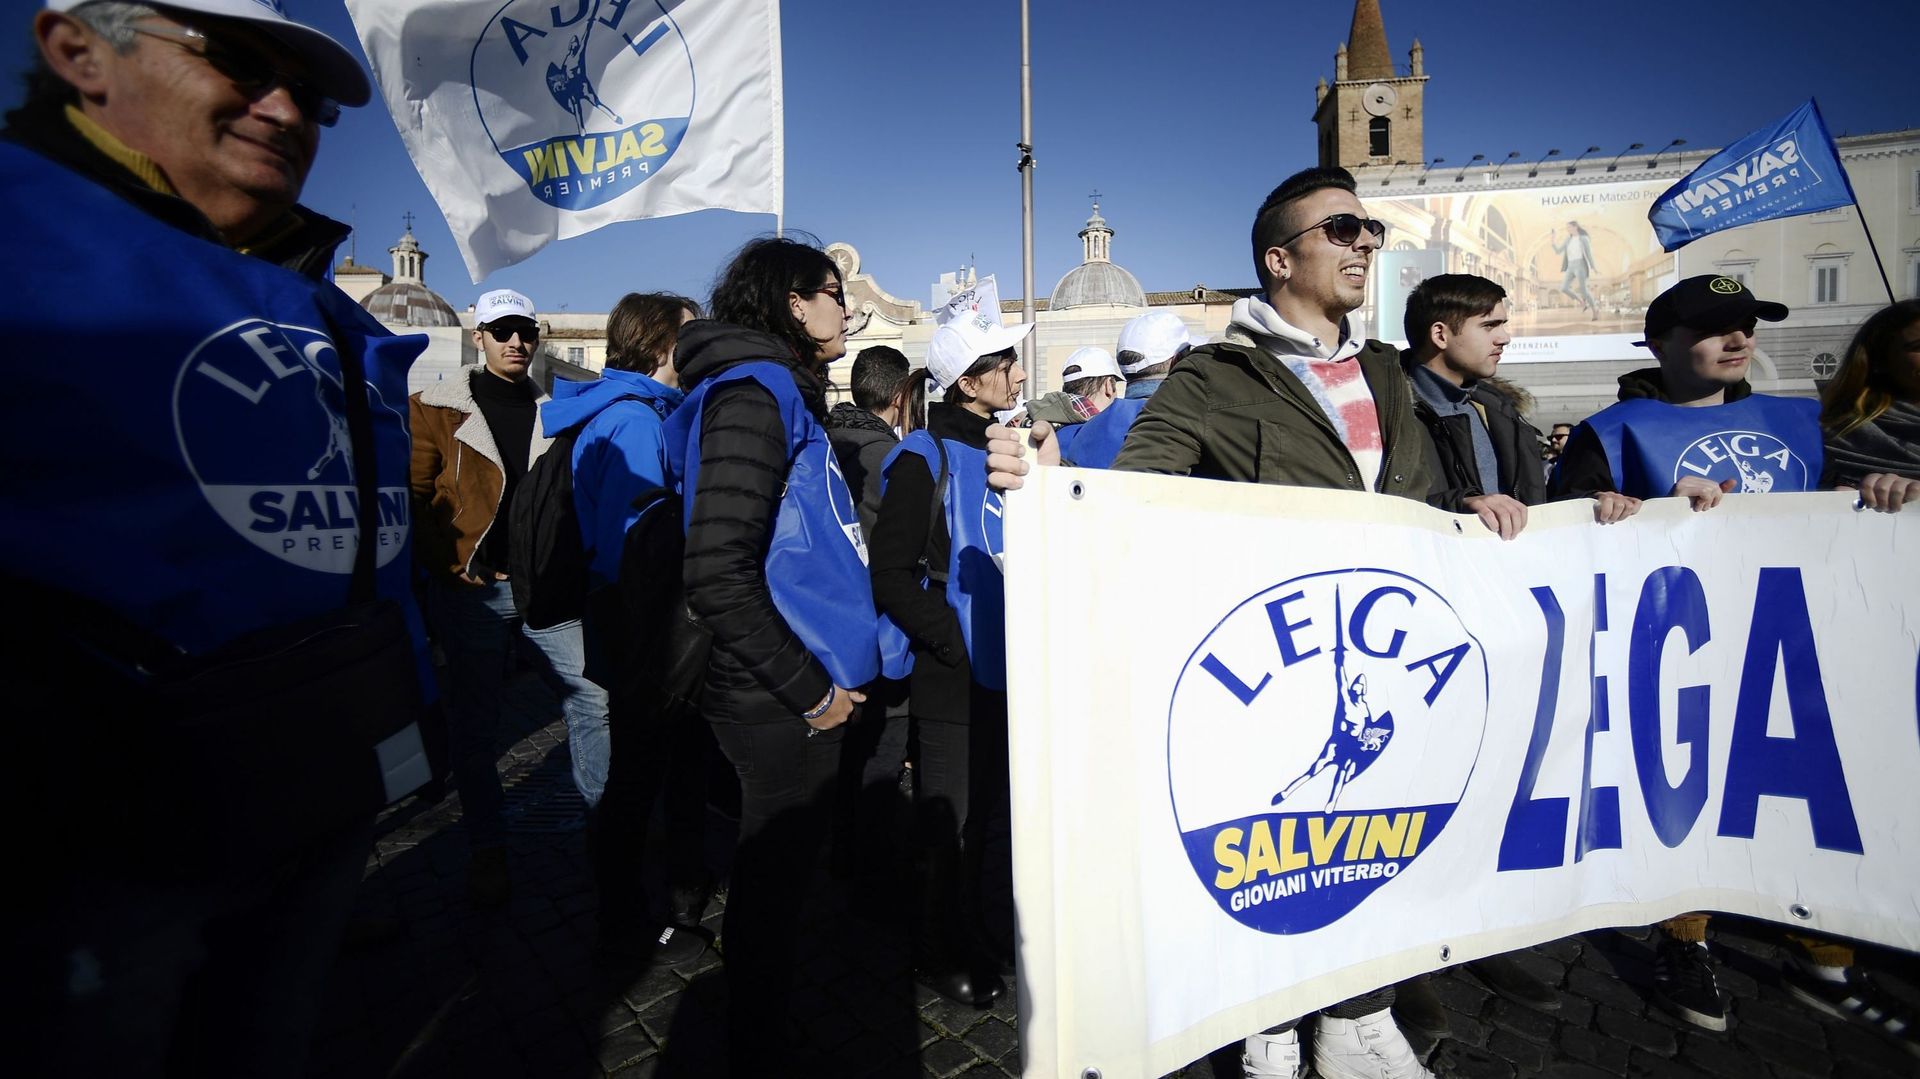 Les militants de La Ligue manifestent à Rome, place del Popolo le 8 décembre 2018. Crédits : Filippo MONTEFORTE /AFP